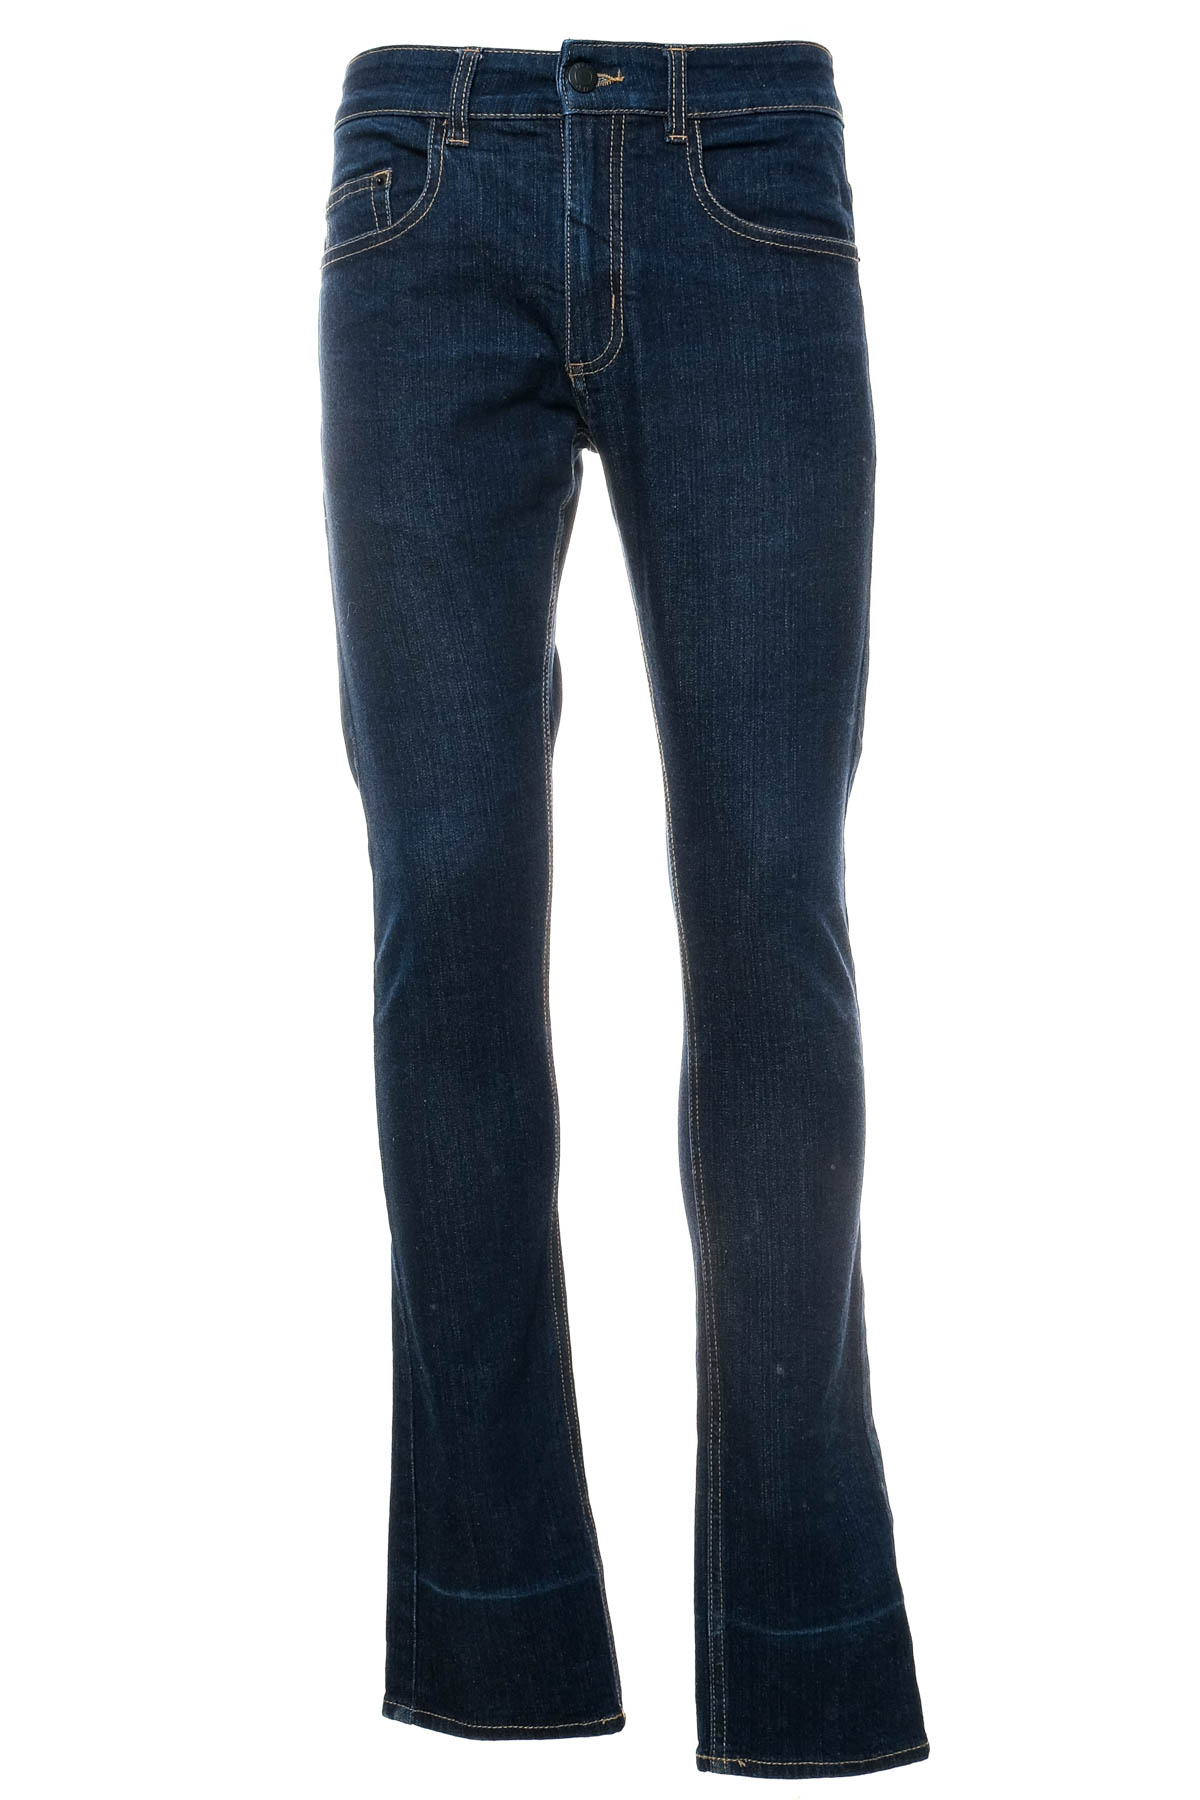 Men's jeans - JBC - 0